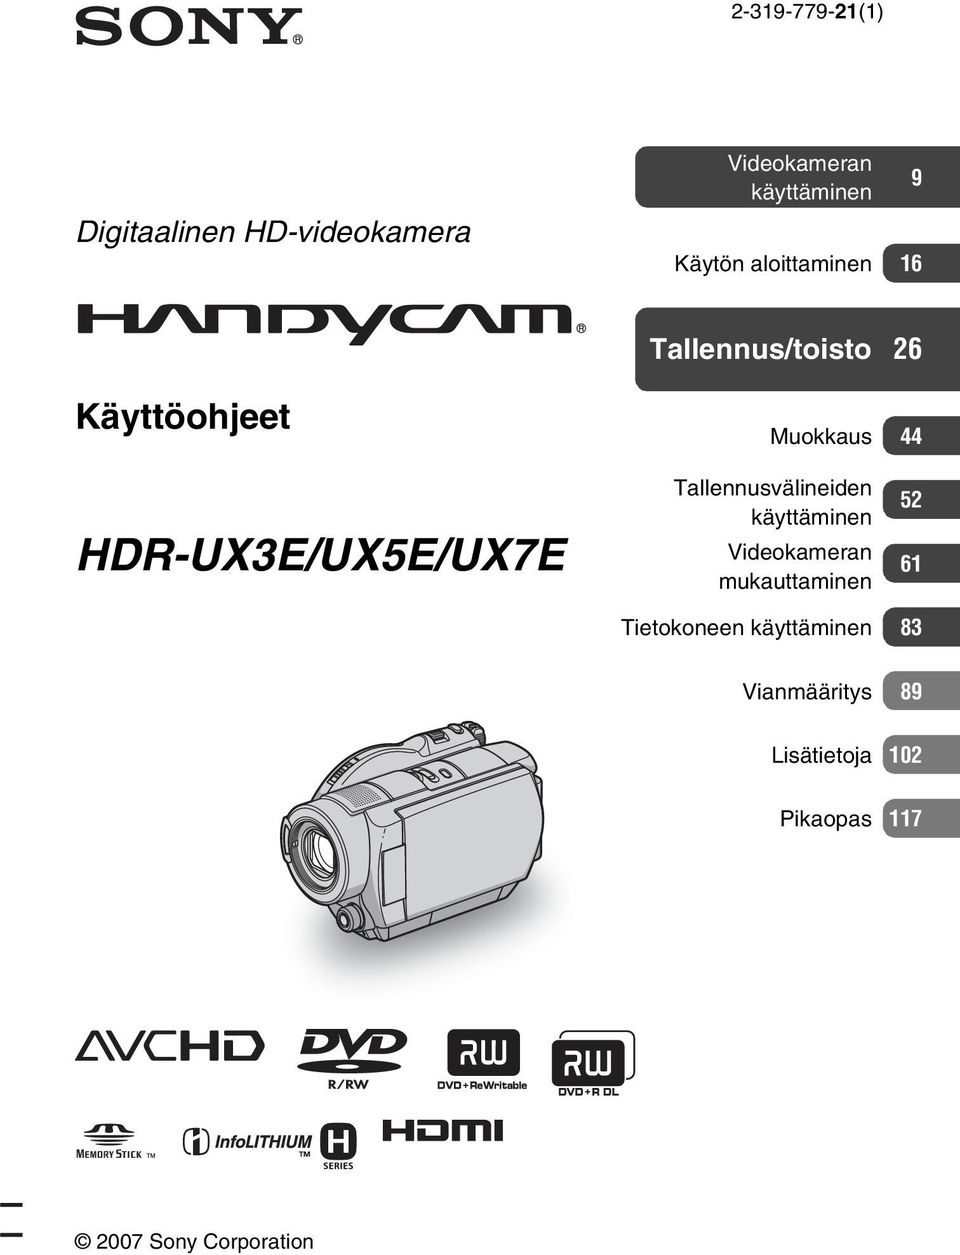 HDR-UX3E/UX5E/UX7E Tallennusvälineiden käyttäminen Videokameran mukauttaminen